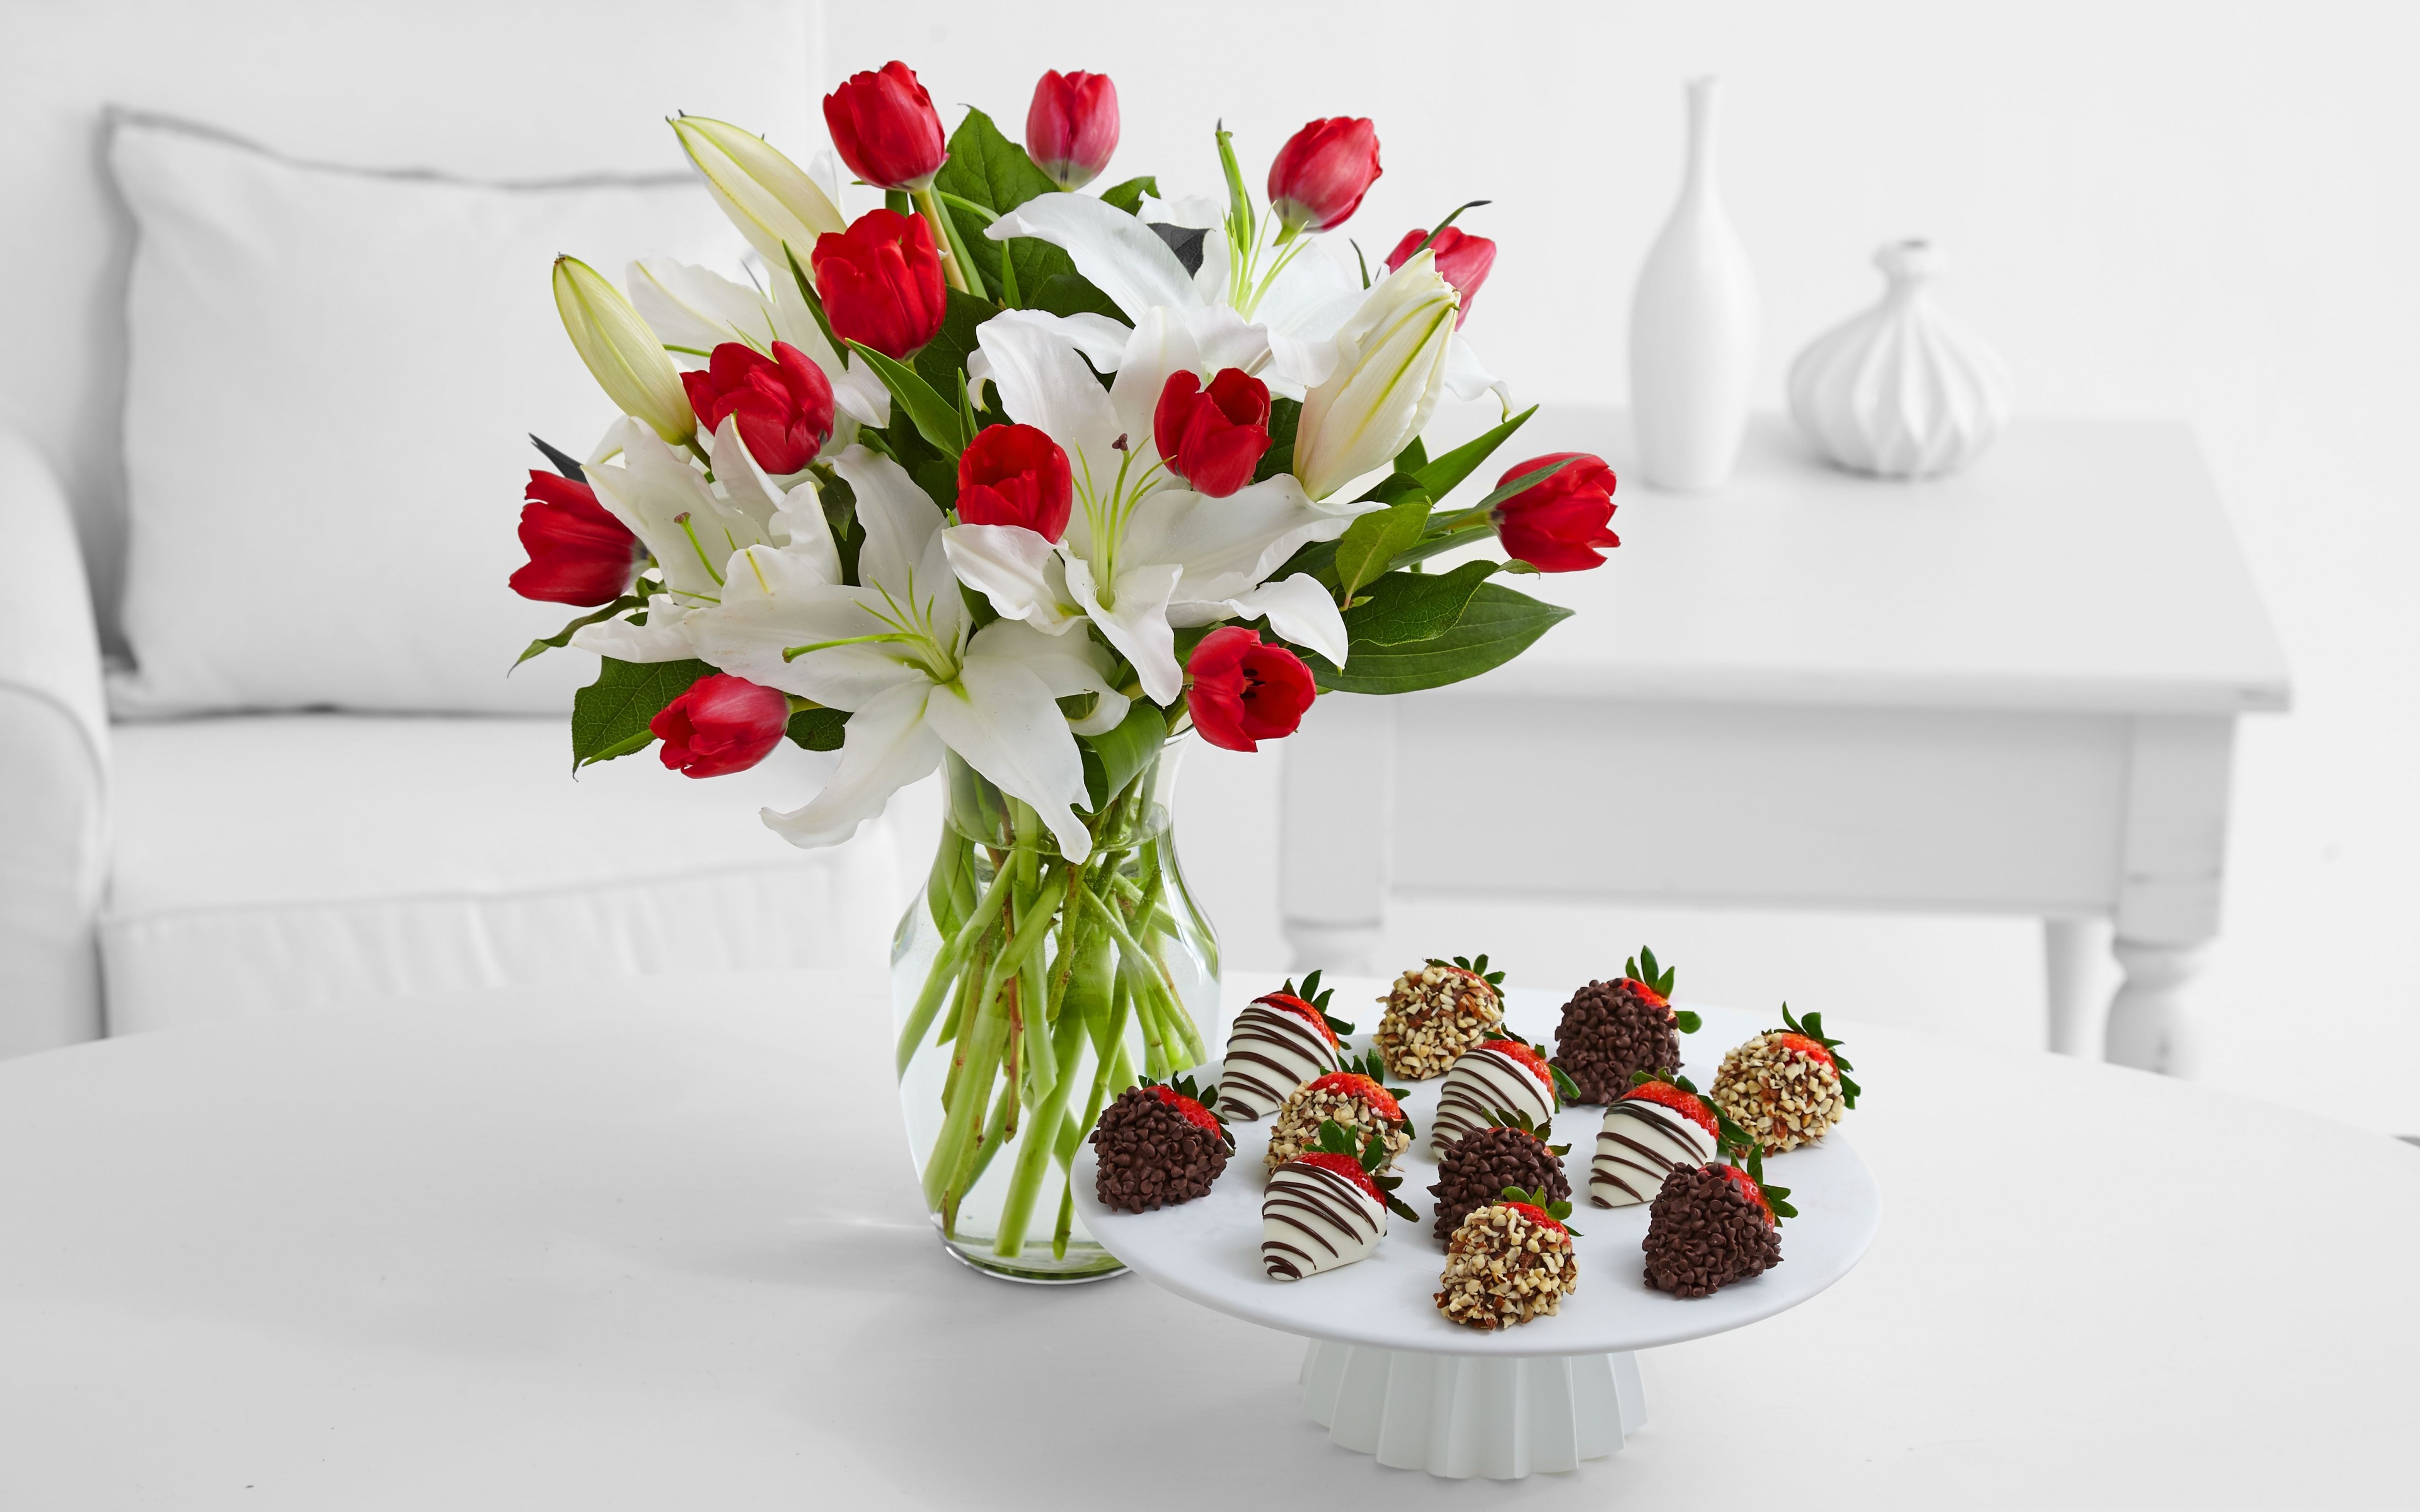 Картинка с цветами на столе. Букет на столе. Букет цветов на столе. Букет тюльпанов. Цветы с конфетами.